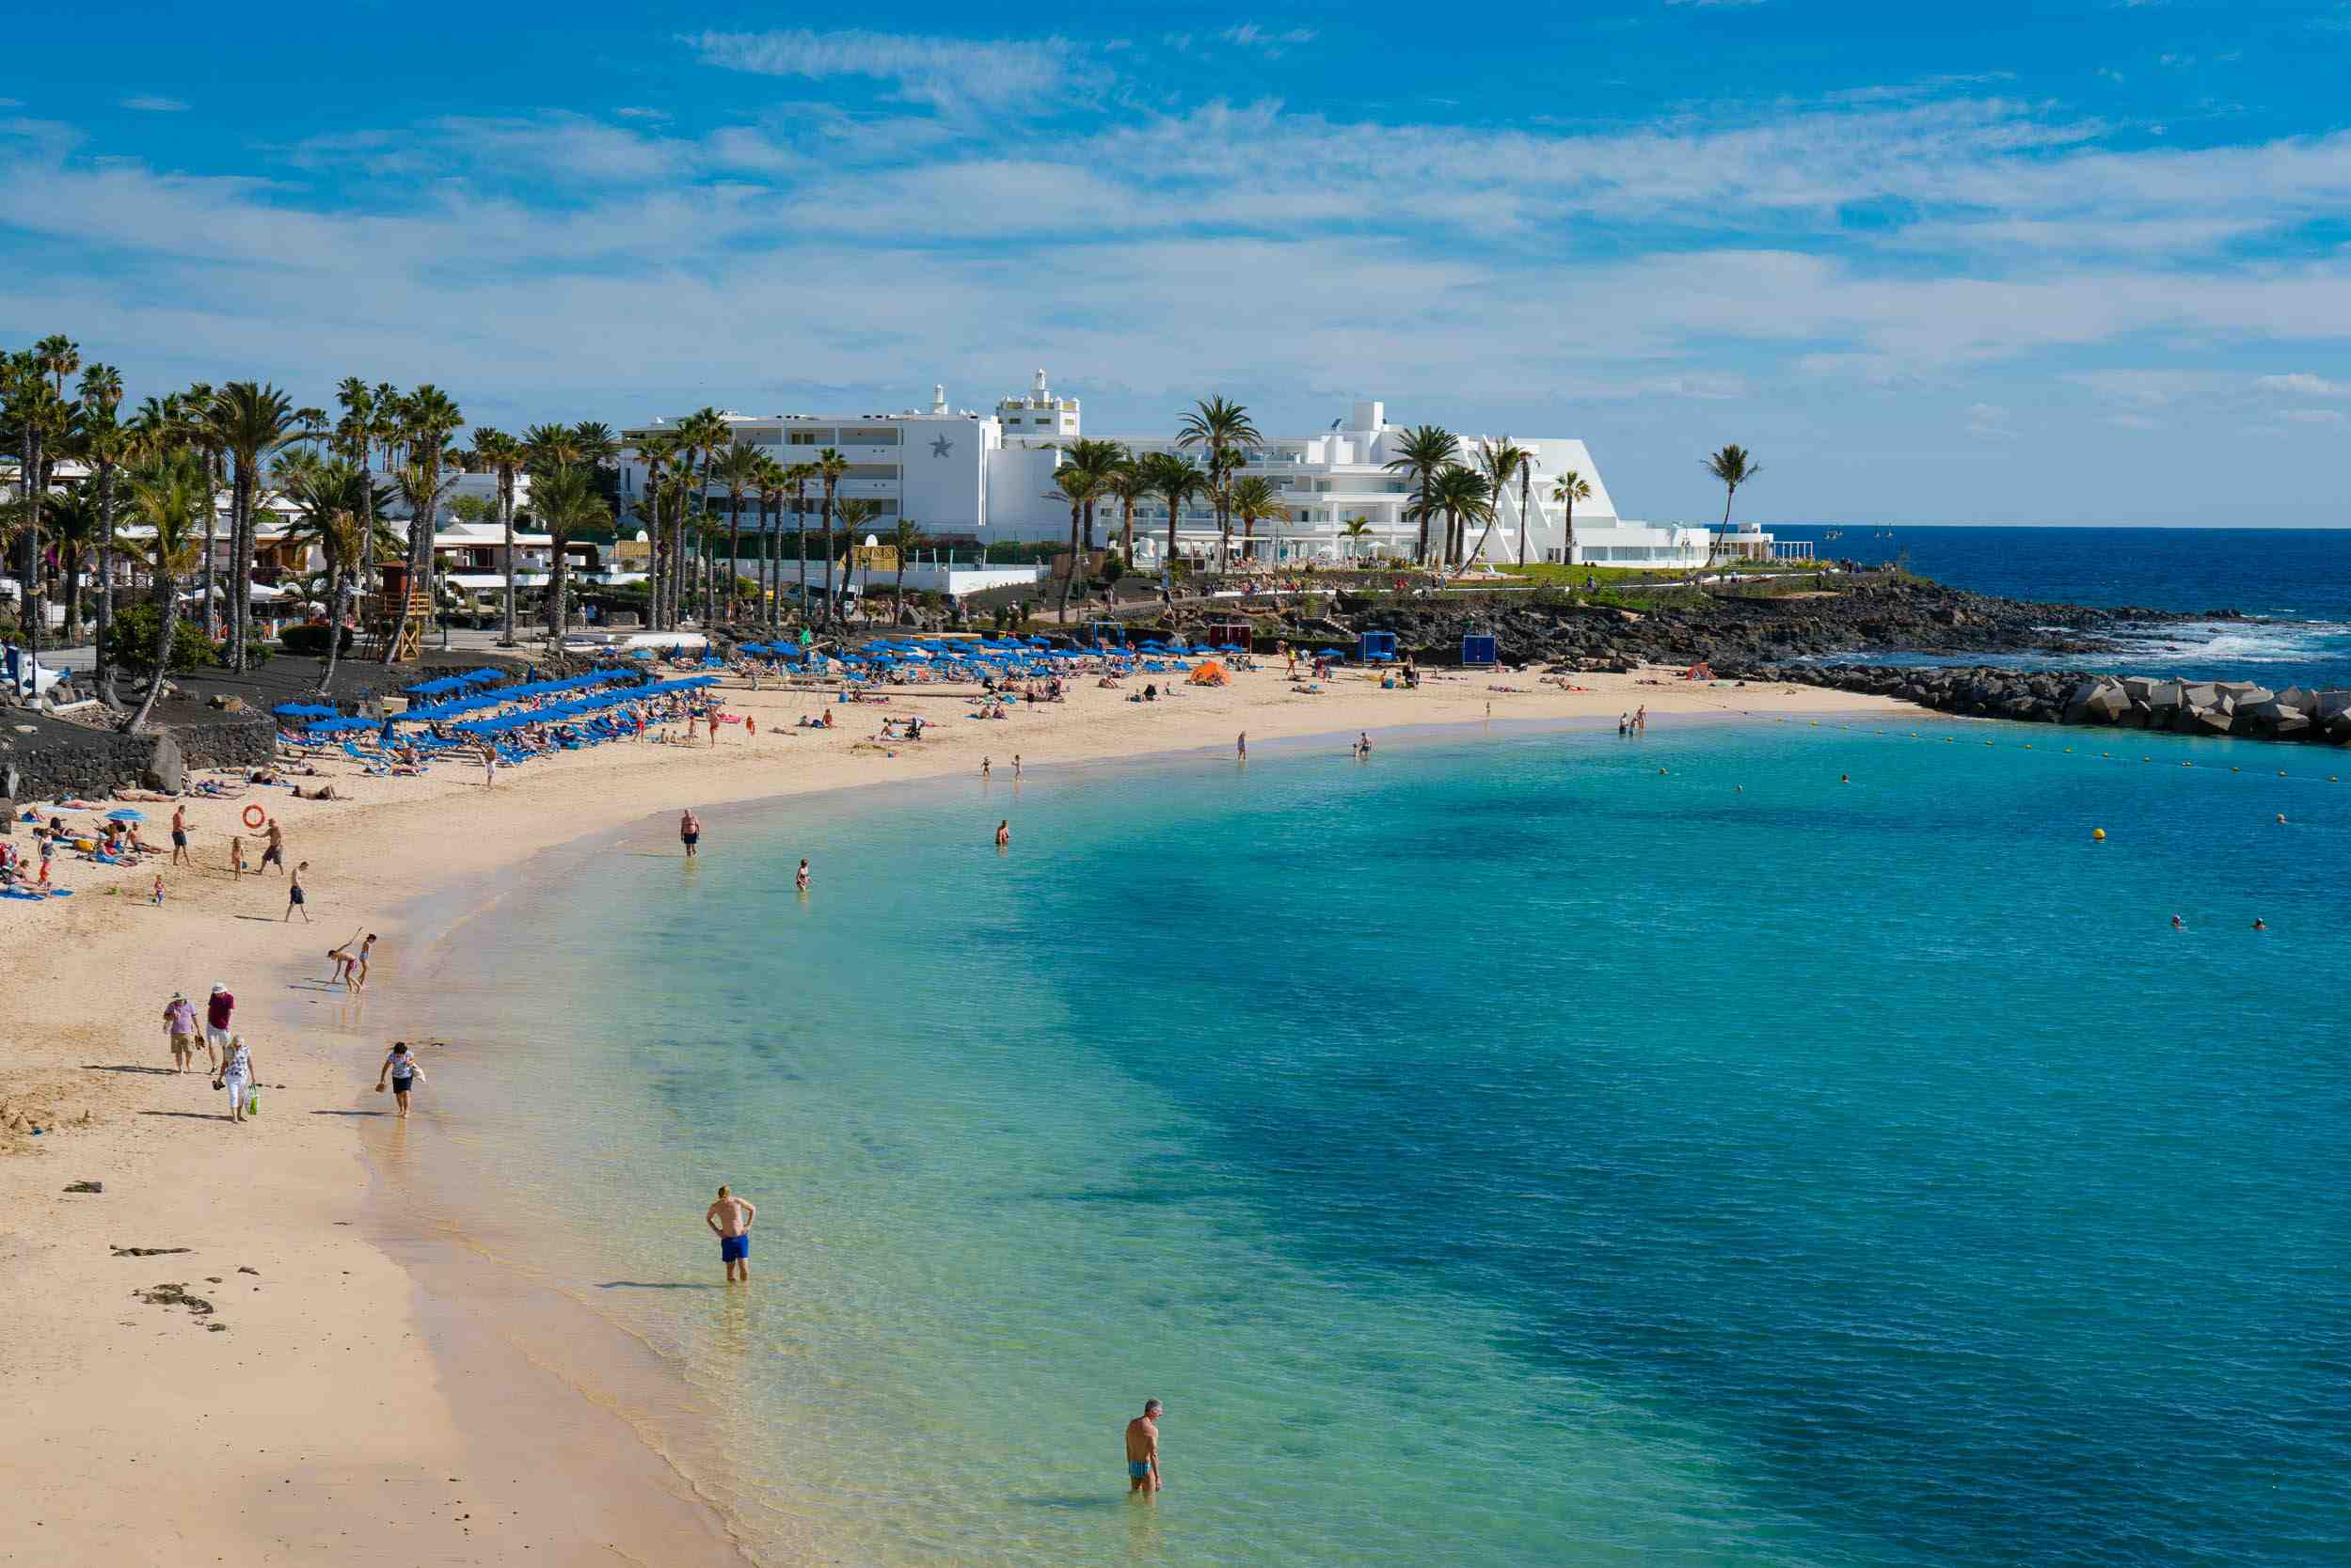 Quelle est la température de l'eau à Lanzarote ?